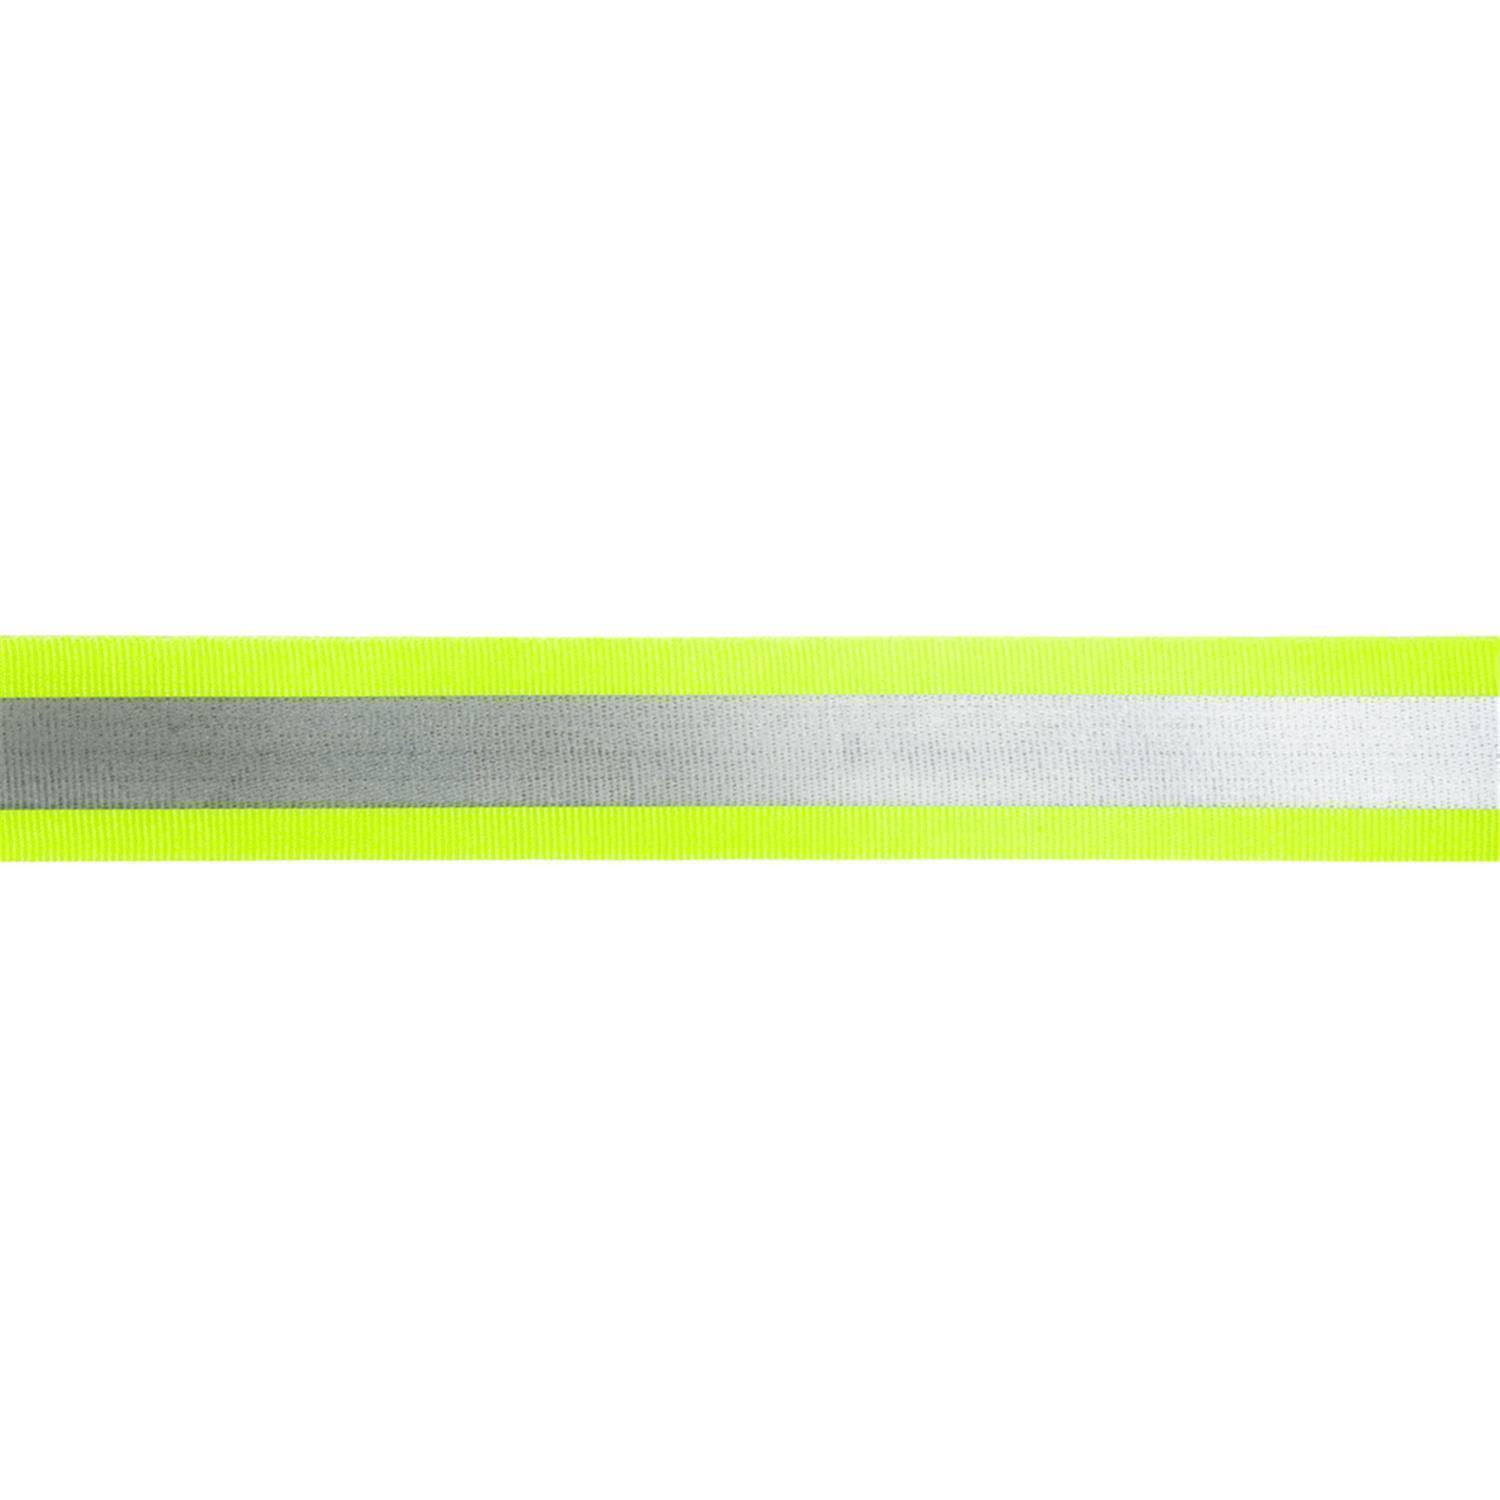 Reflektorband 50mm breit in 2 Farben gelb-silber 05 Meter